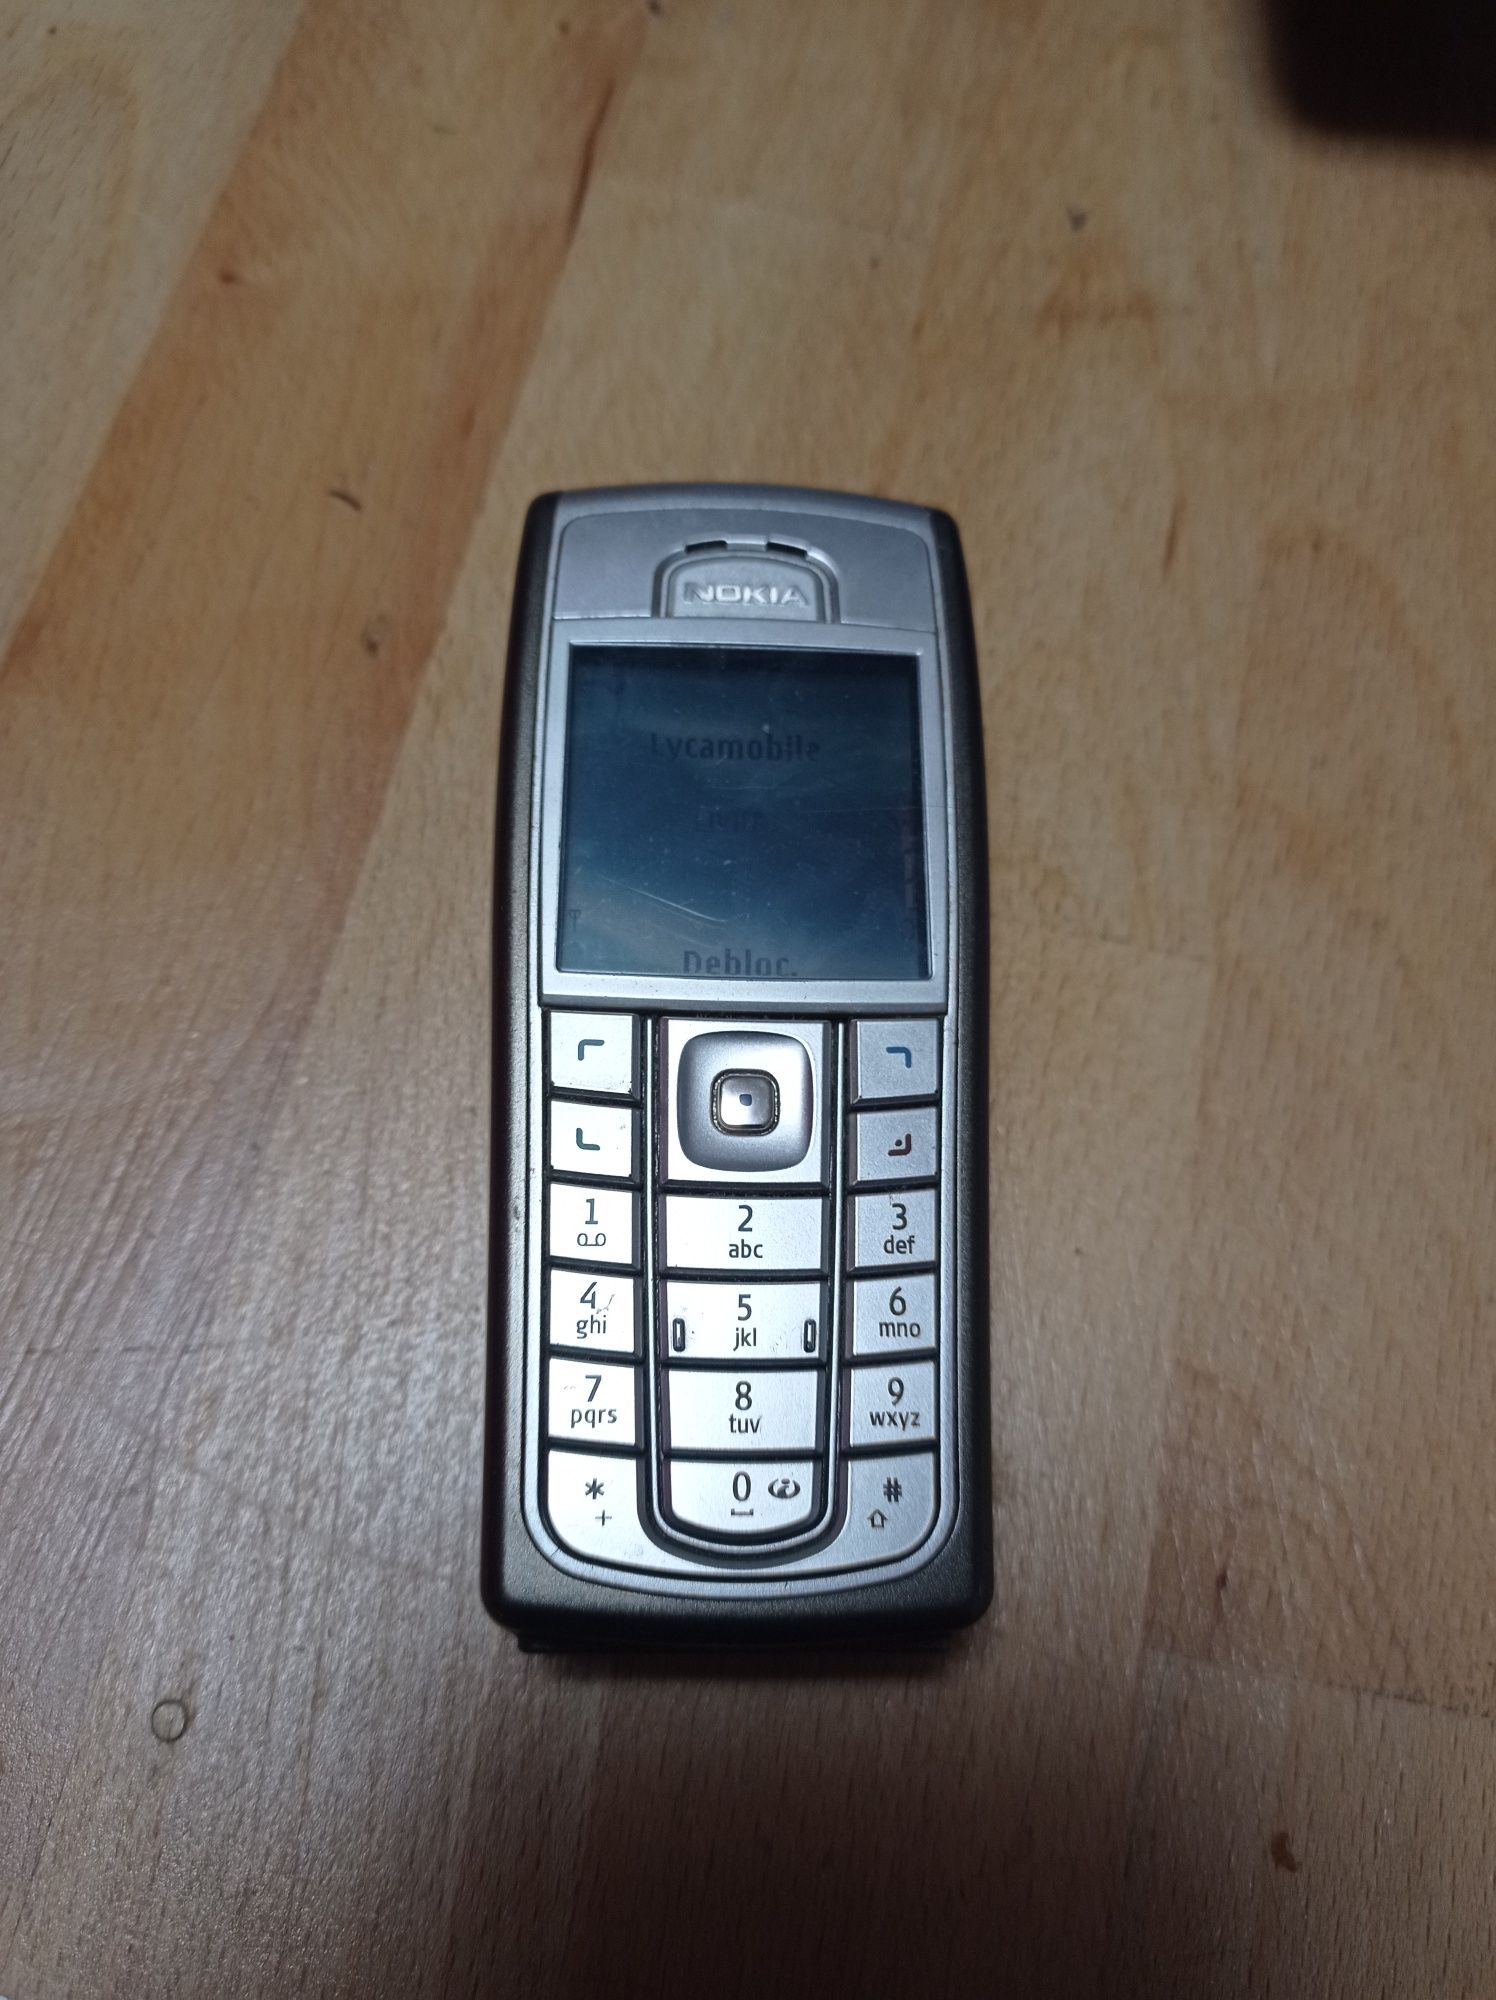 Nokia C5-03, 6230, E65-1, pentru colecționari